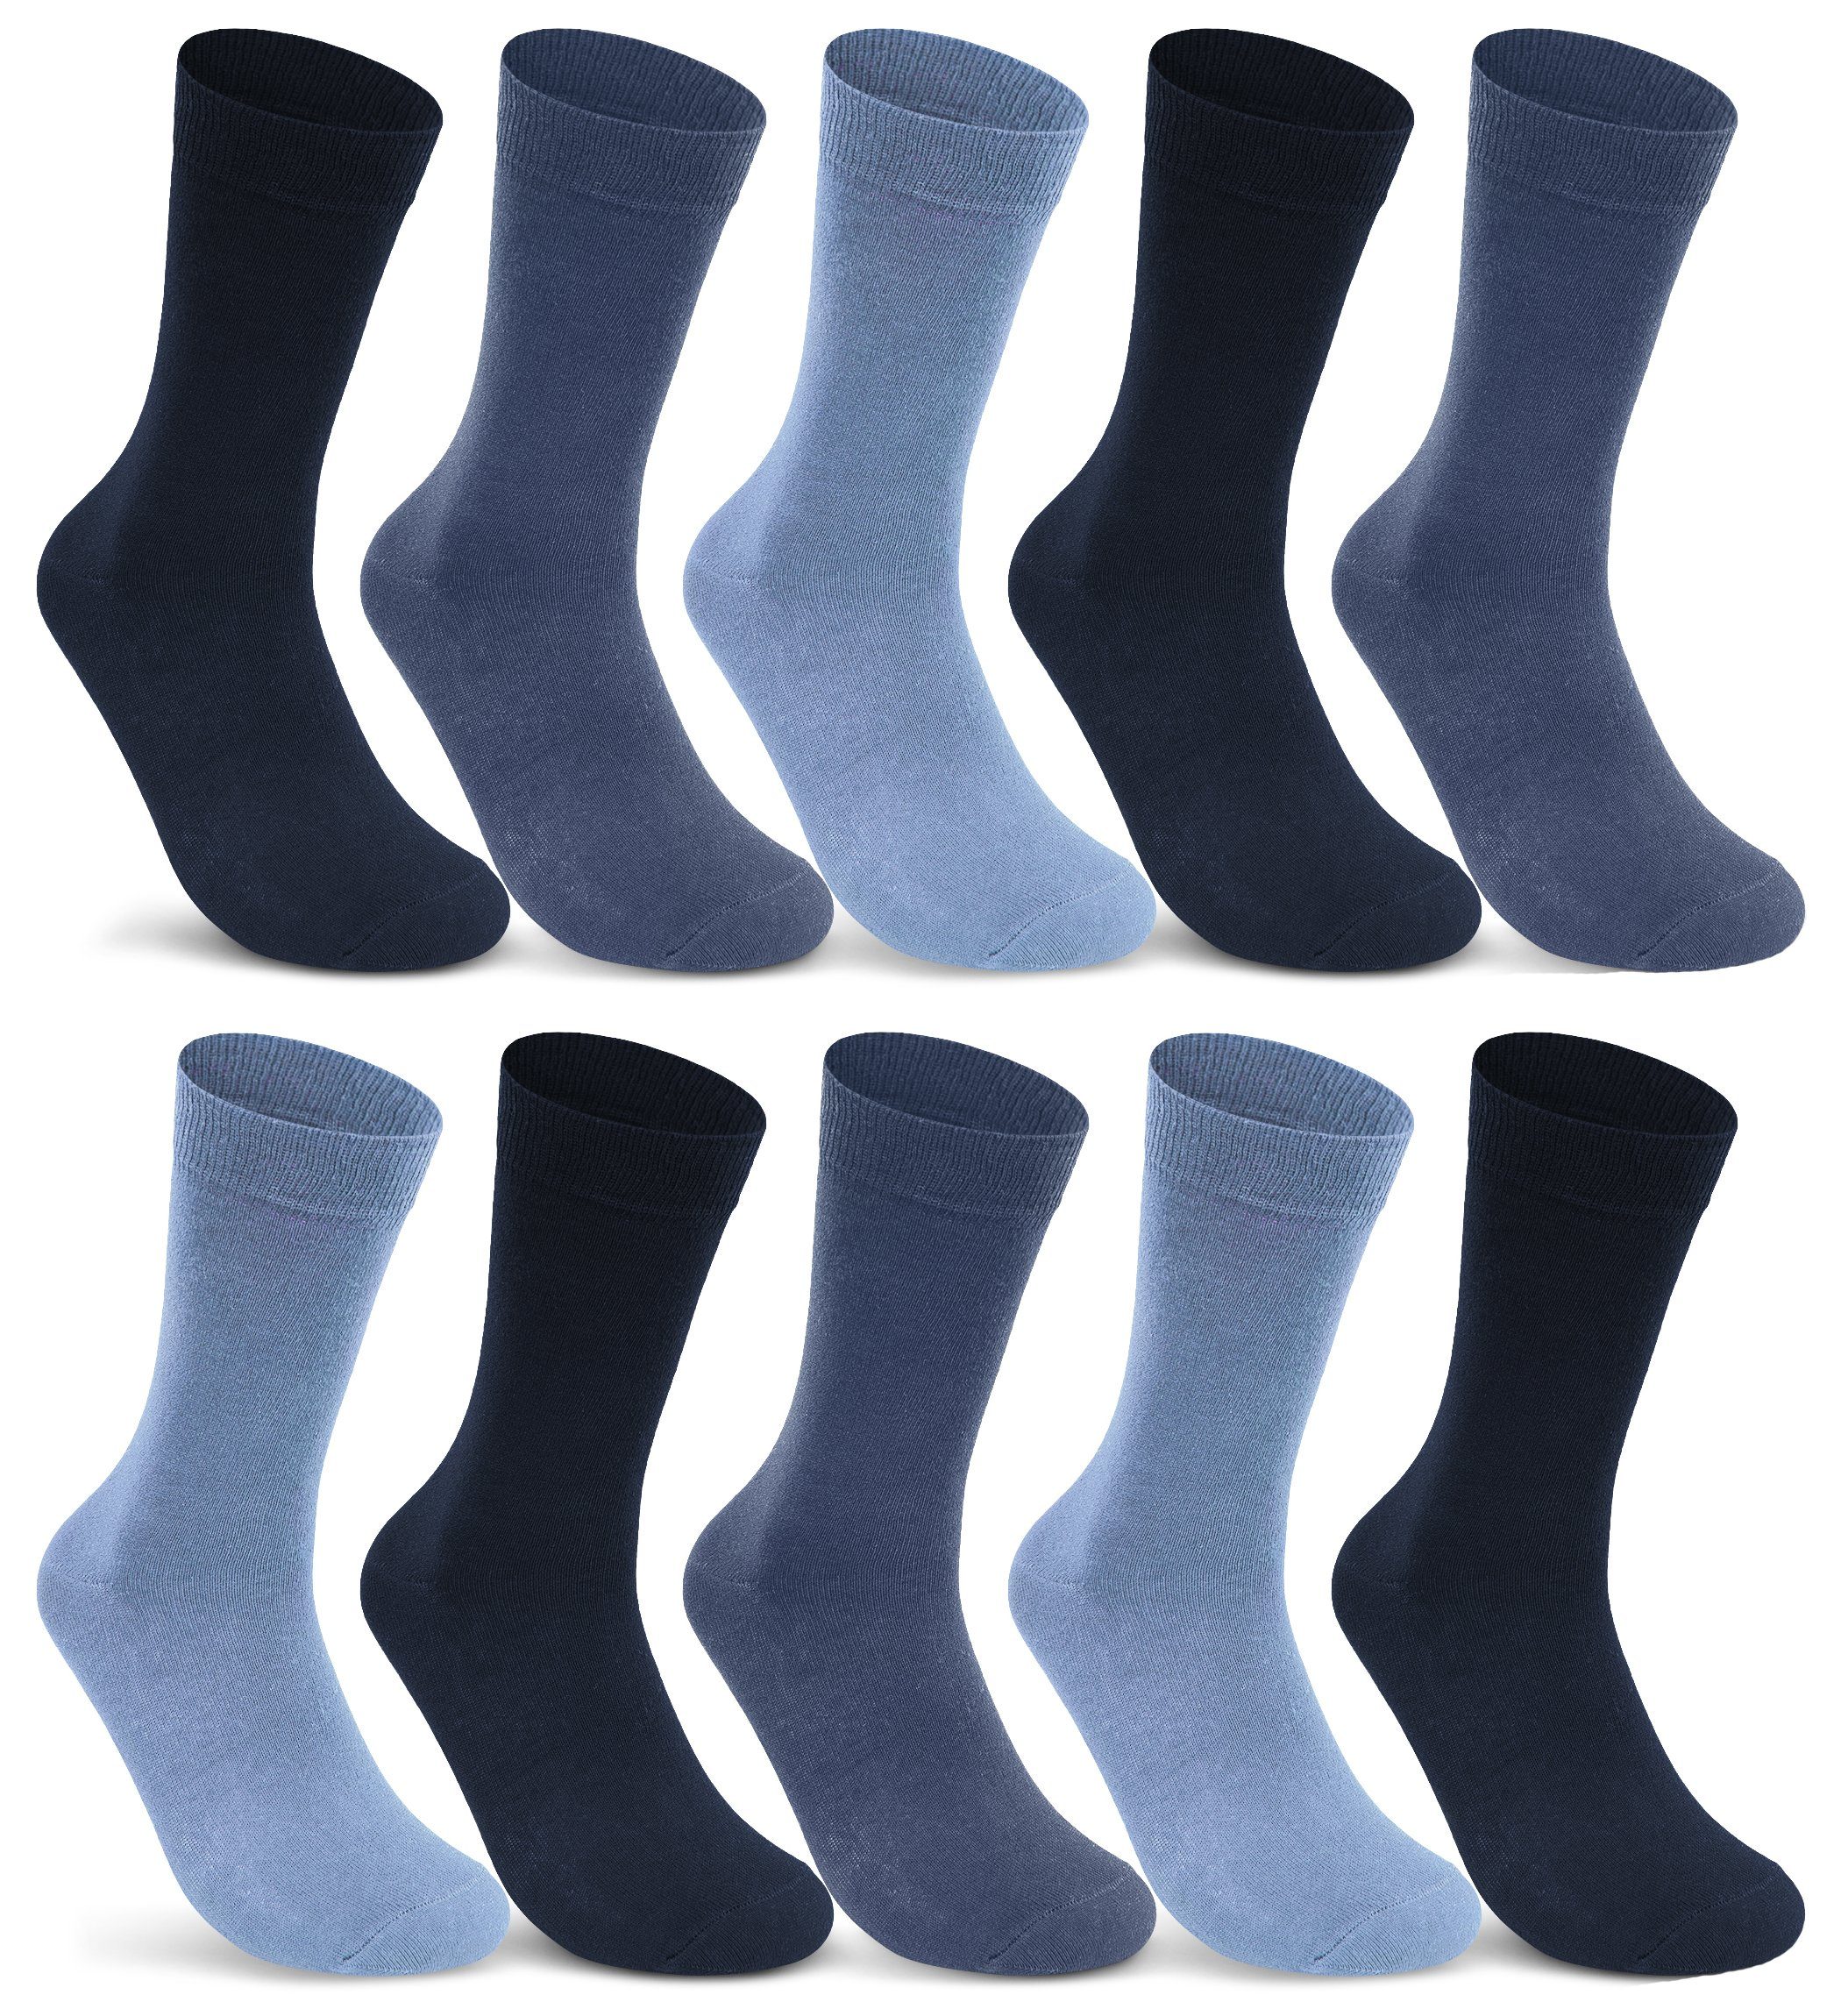 sockenkauf24 Socken 10 I 20 I 30 Paar Damen & Herren Business Socken Baumwolle (Jeans, Navy, Blau, 10-Paar, 35-38) mit Komfortbund Strümpfe - 10700